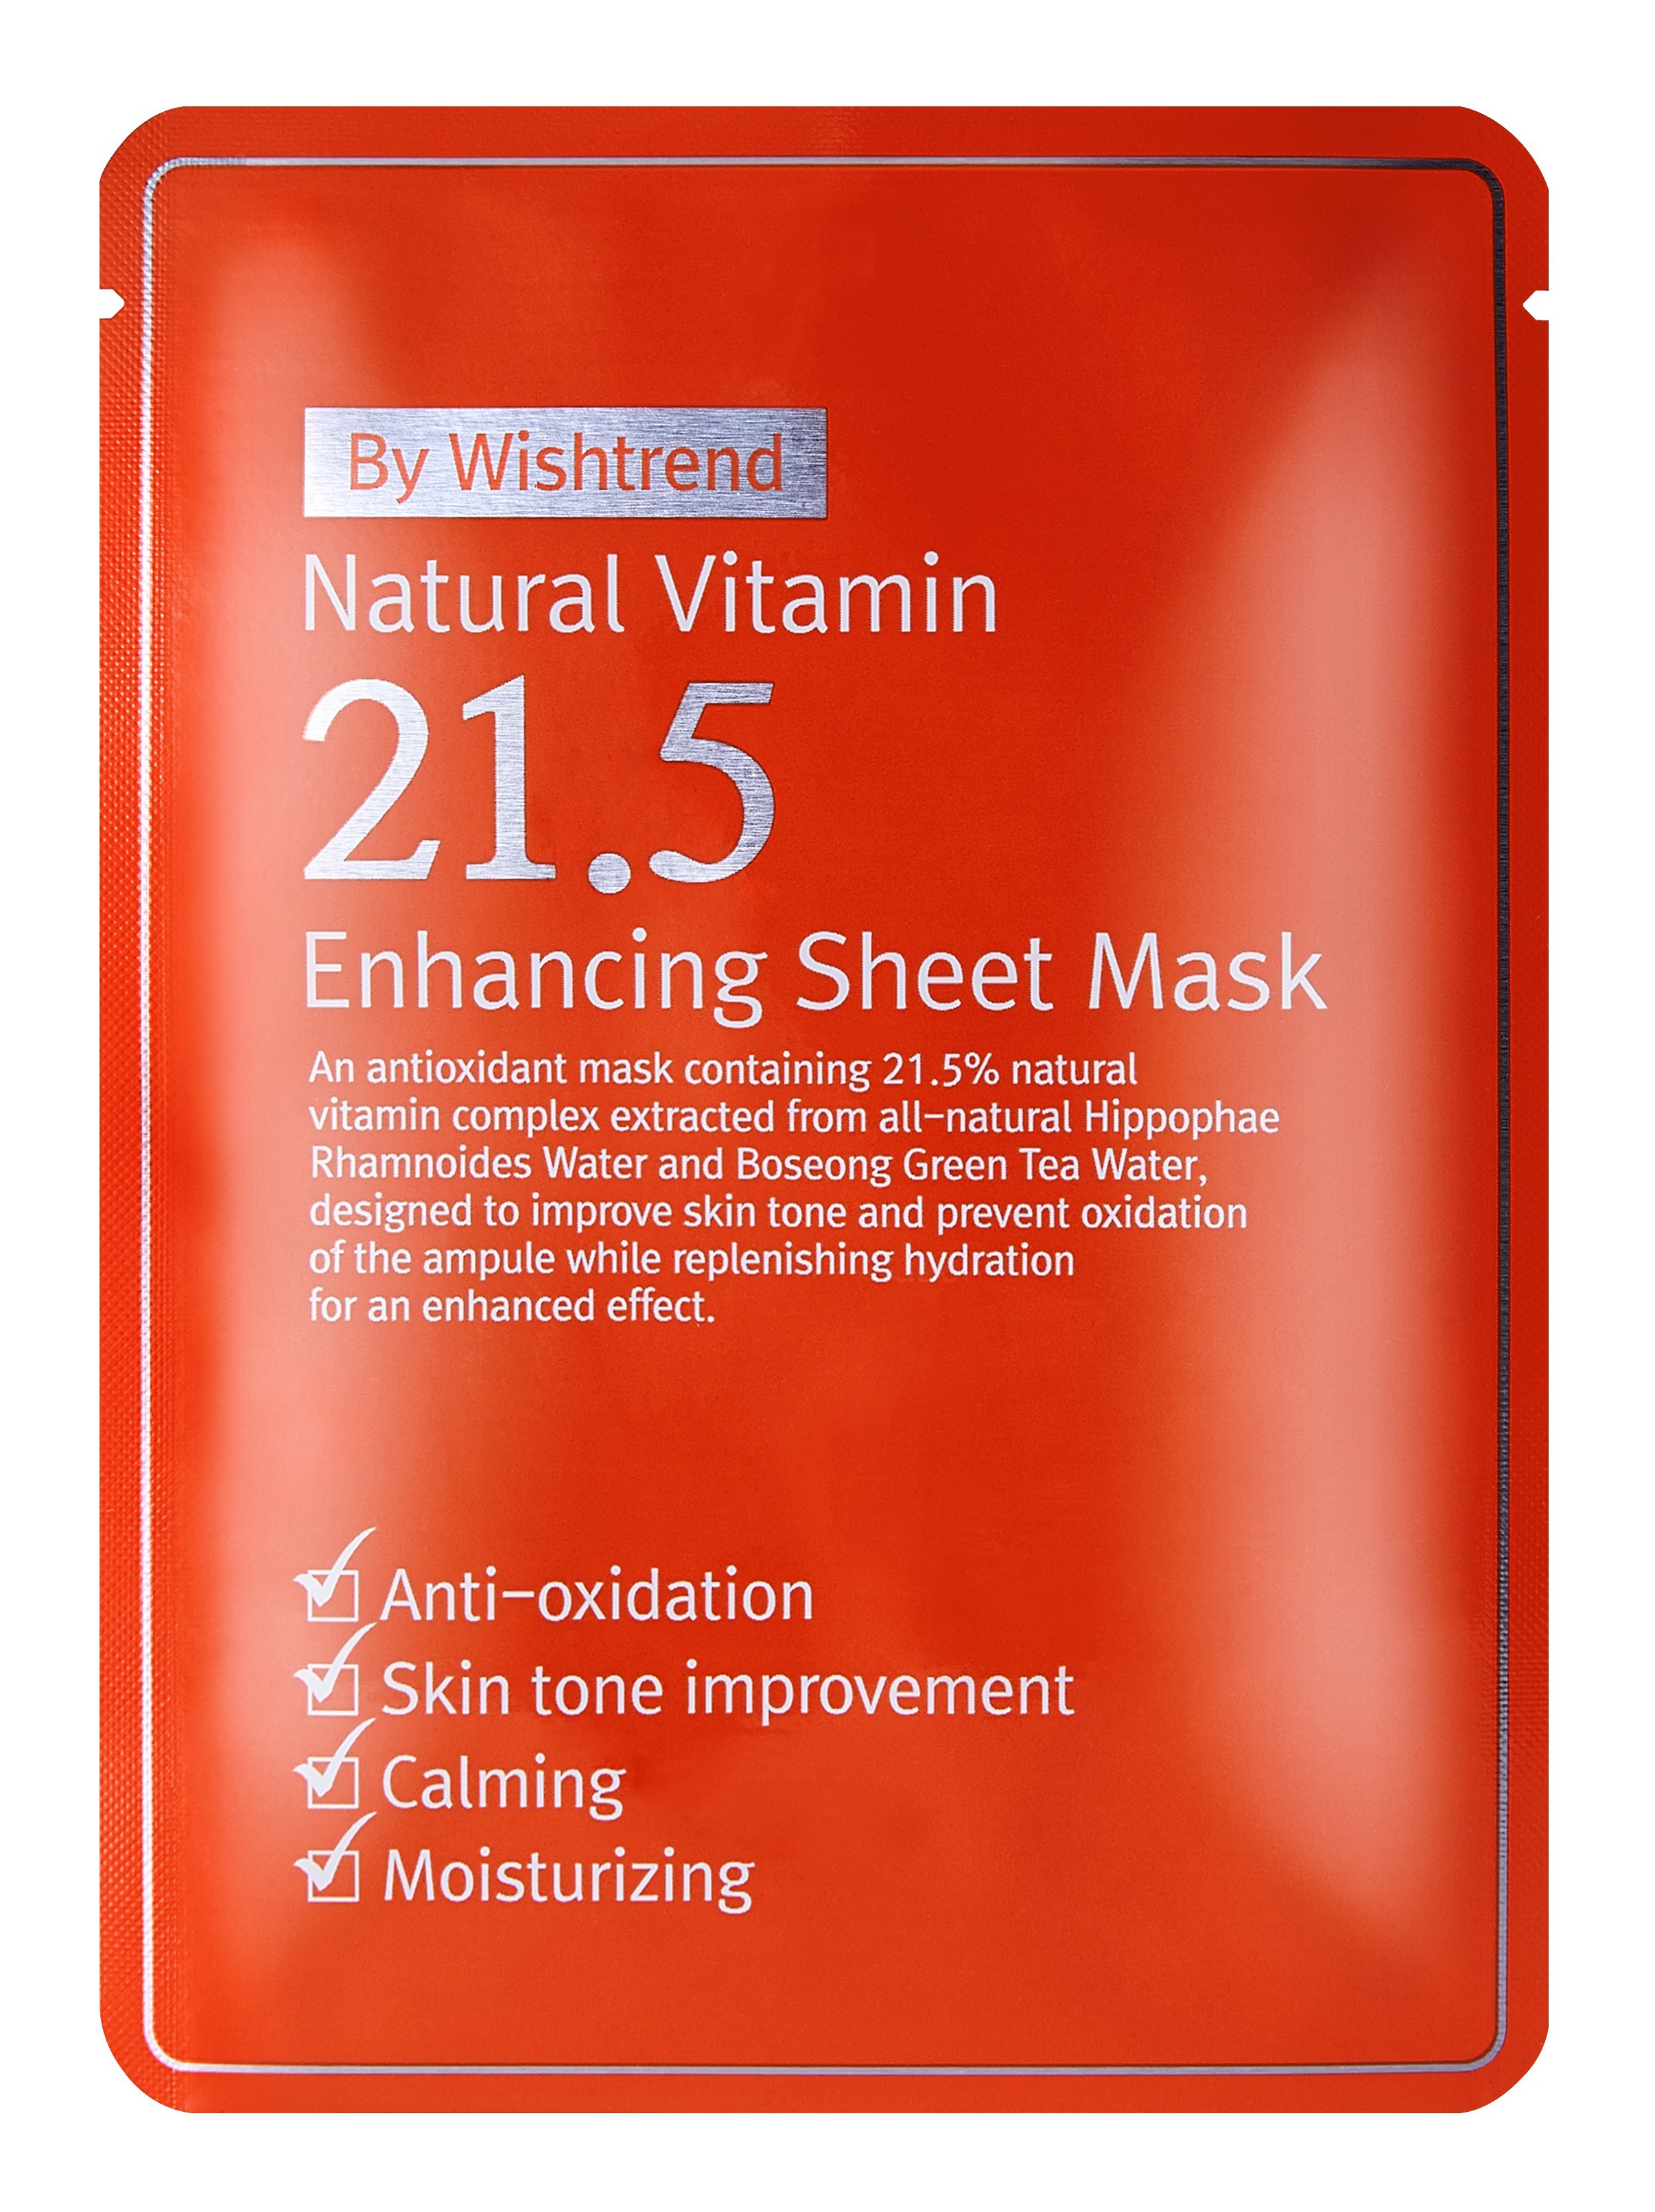 By Wishtrend Natural Vitamin 21.5 Enhancing Sheet Mask